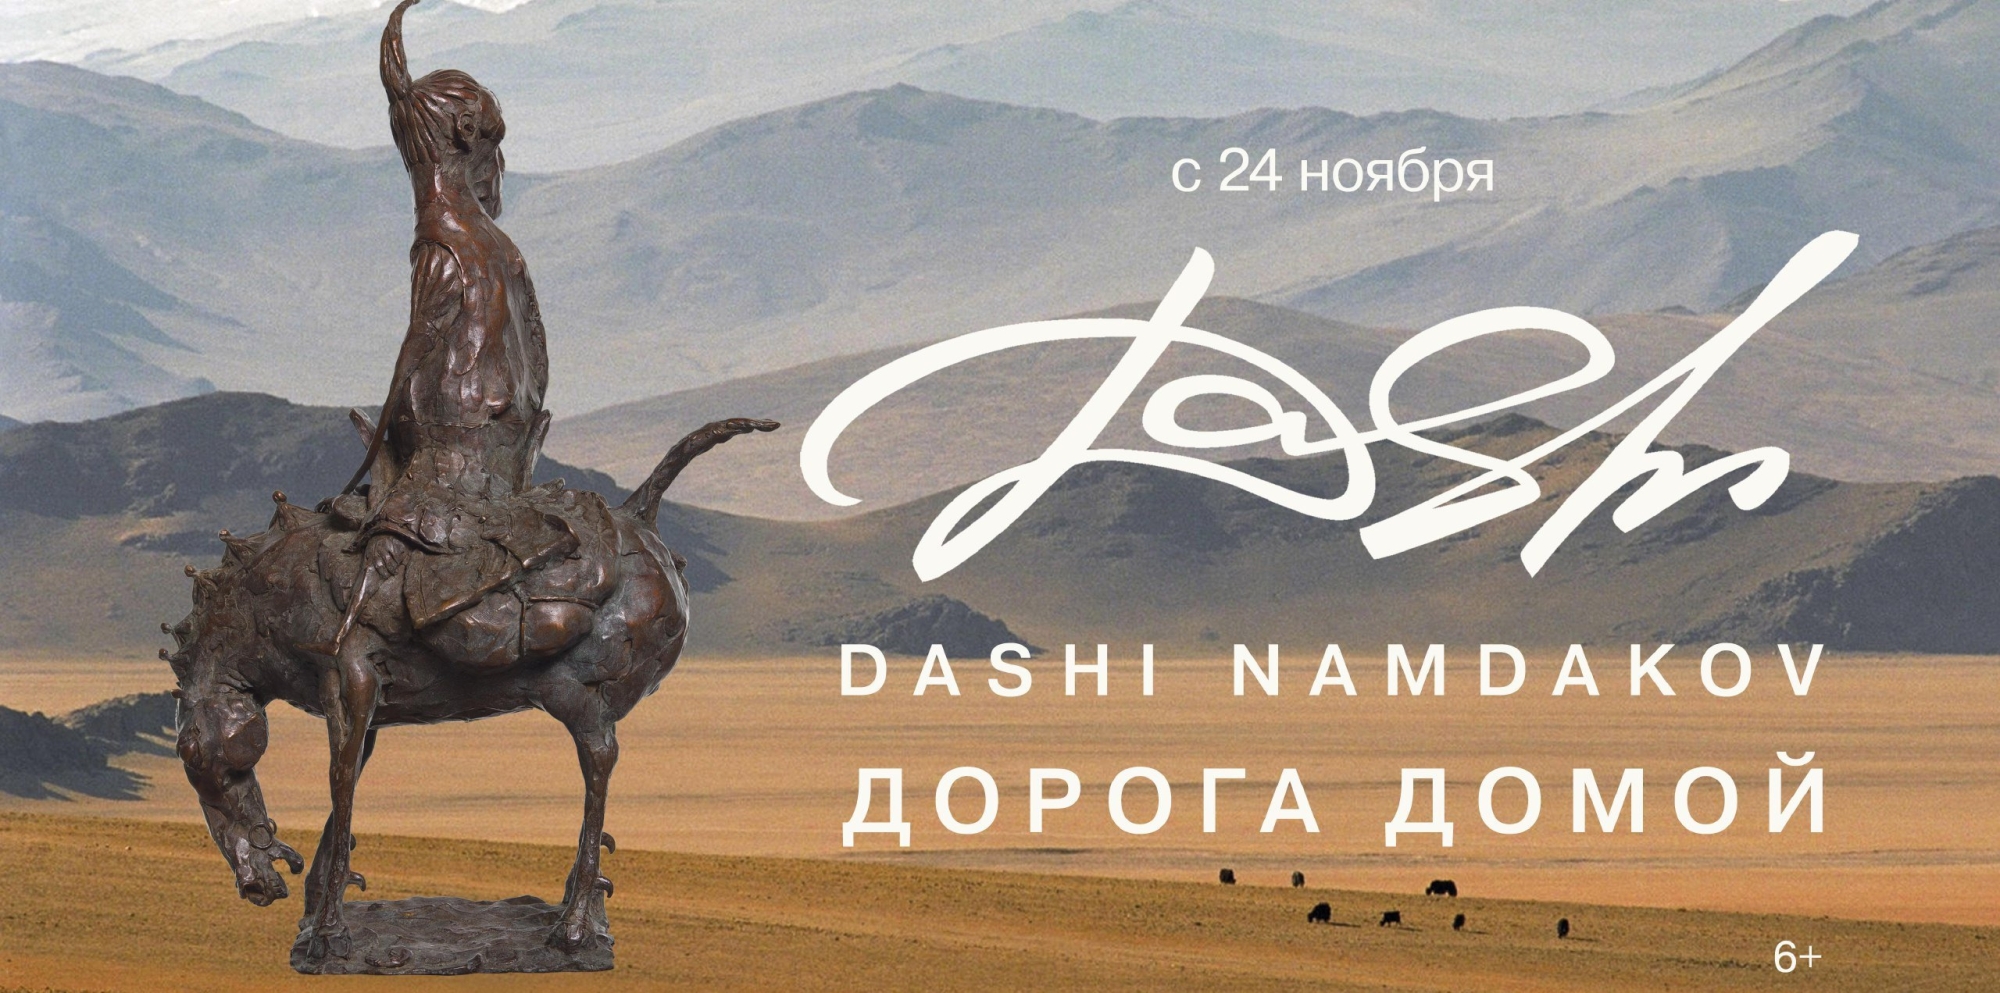 Фото В Улан-Удэ откроется персональная выставка Даши Намдакова